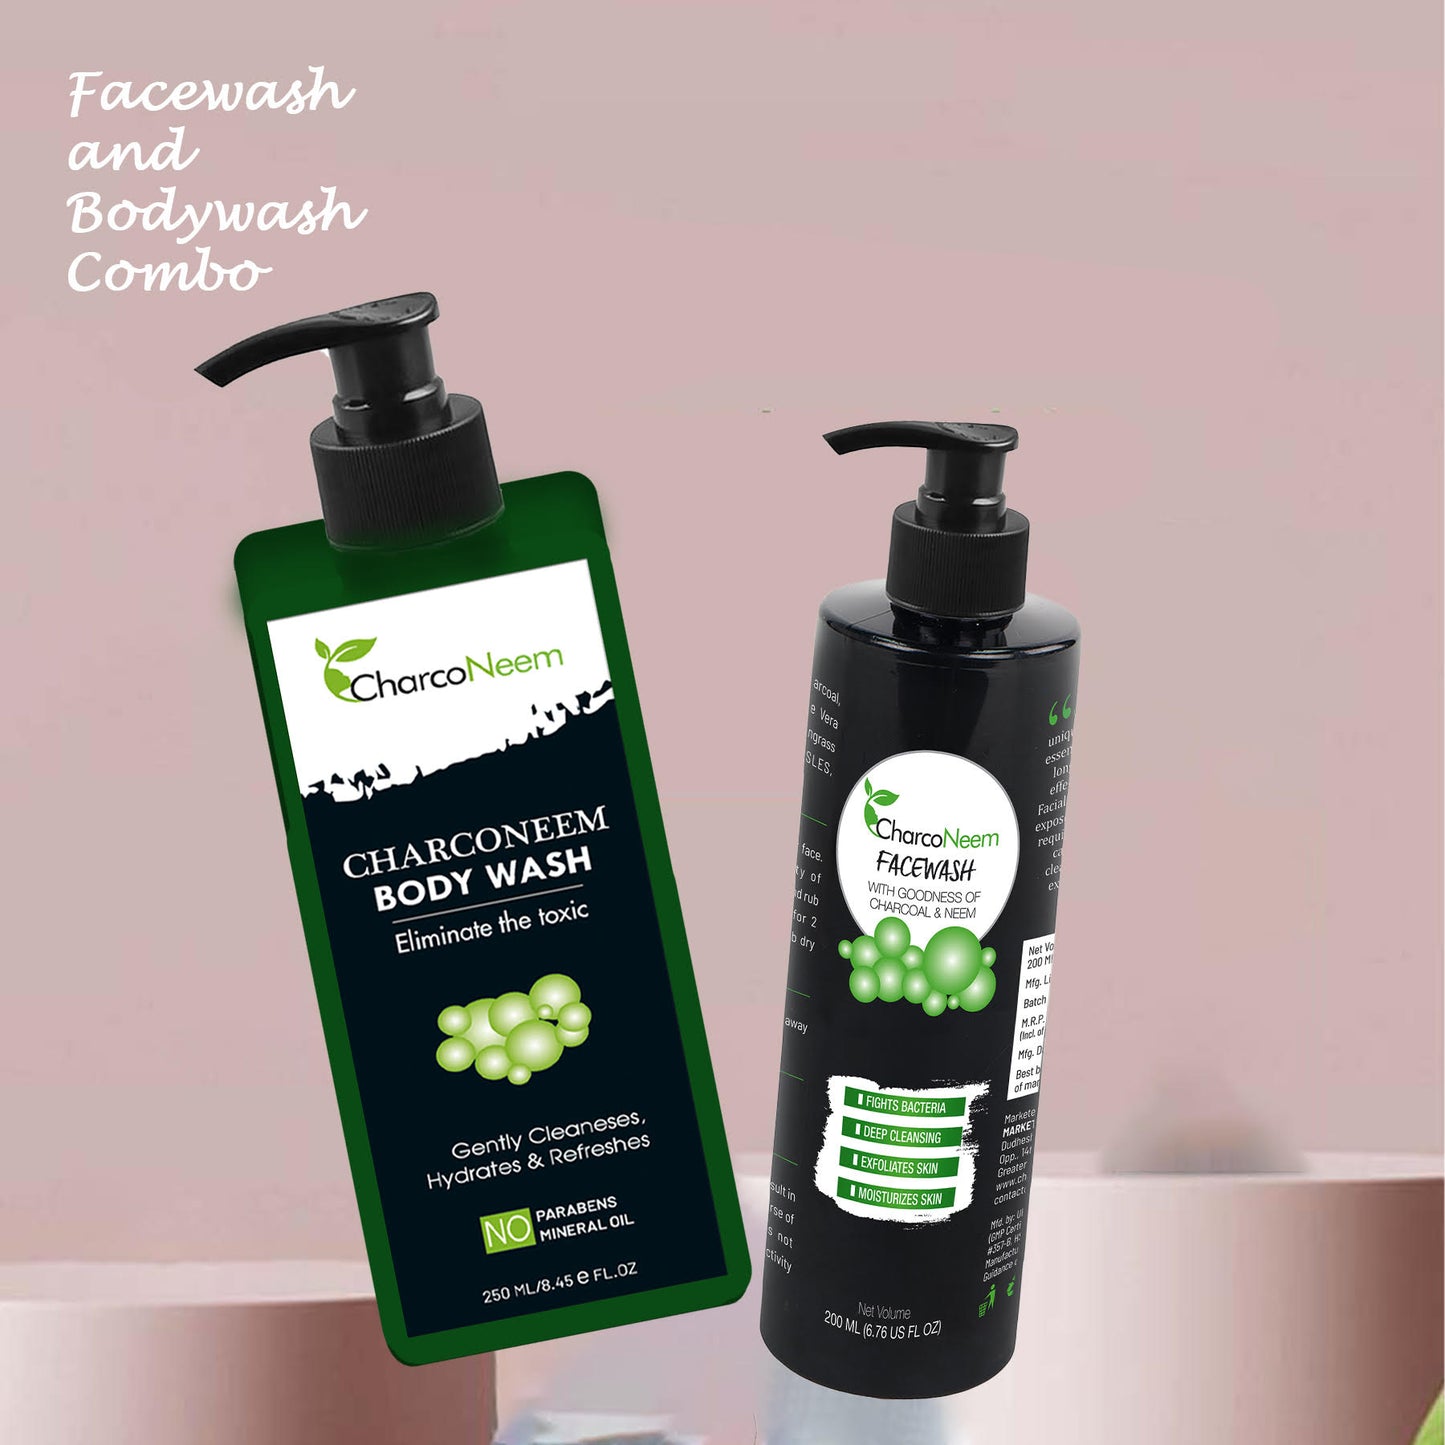 Facewash & Body wash combo